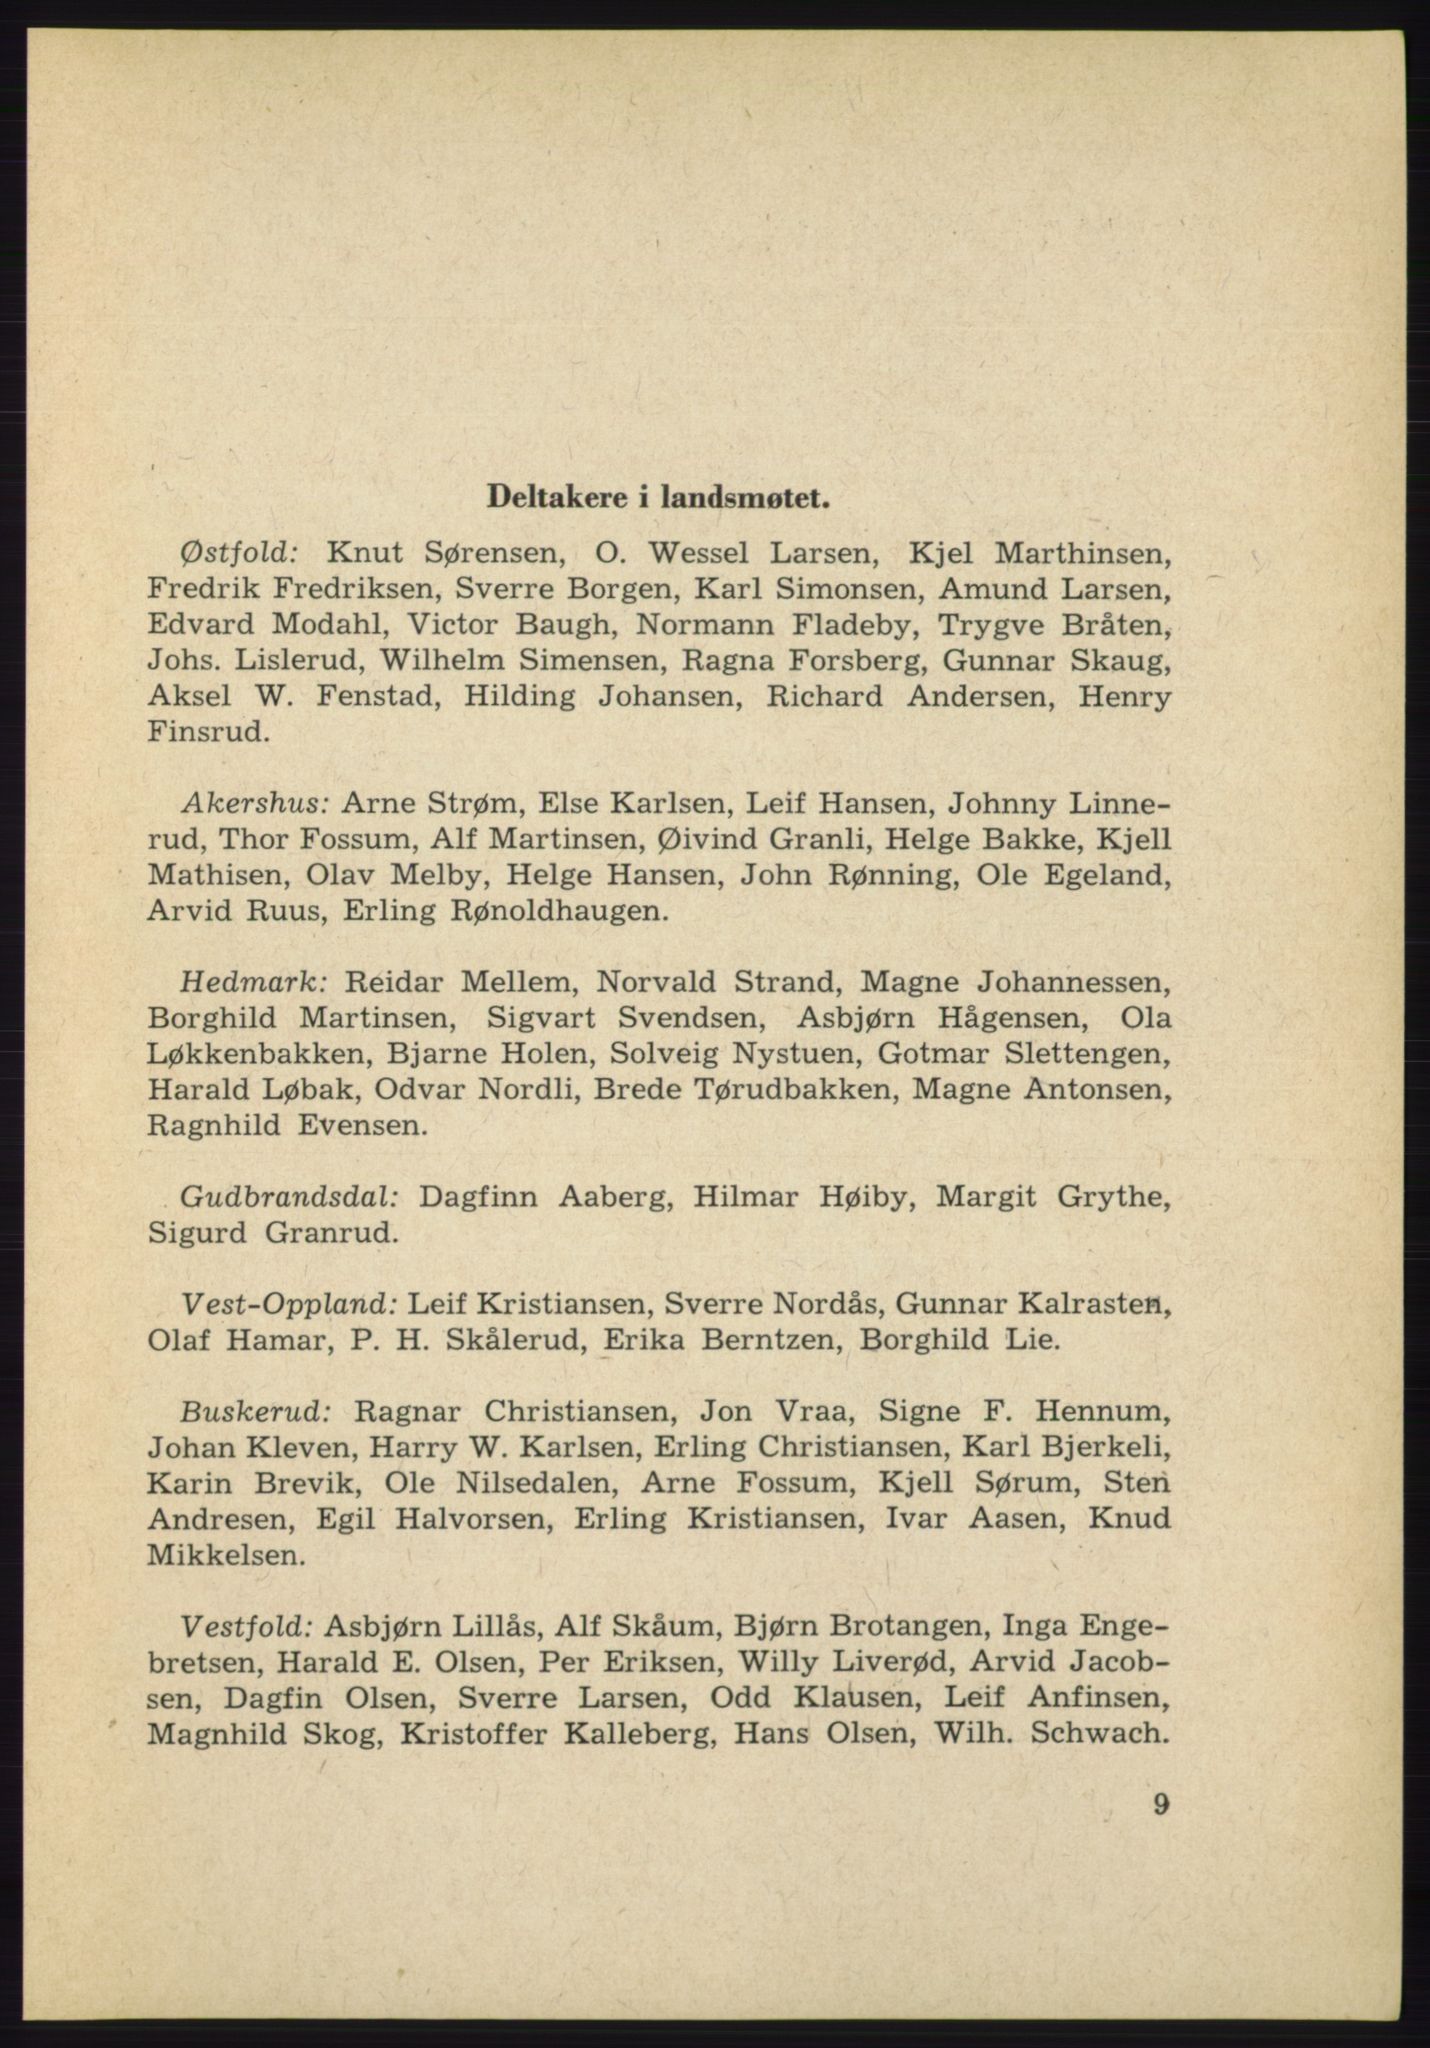 Det norske Arbeiderparti - publikasjoner, AAB/-/-/-: Protokoll over forhandlingene på det 38. ordinære landsmøte 9.-11. april 1961 i Oslo, 1961, p. 9